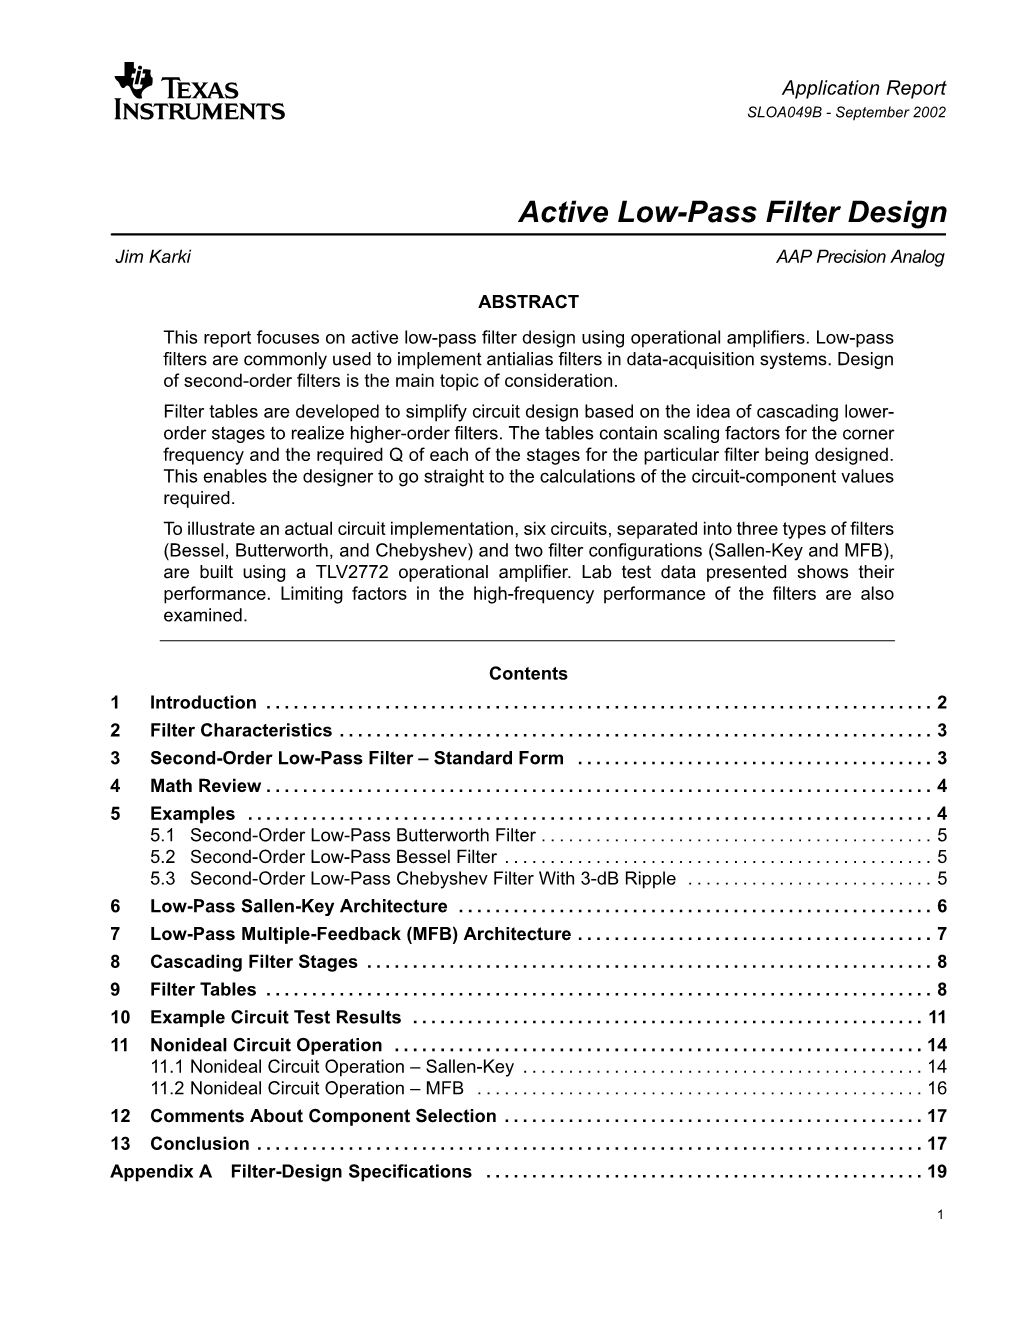 Active Low-Pass Filter Design (Rev. B)